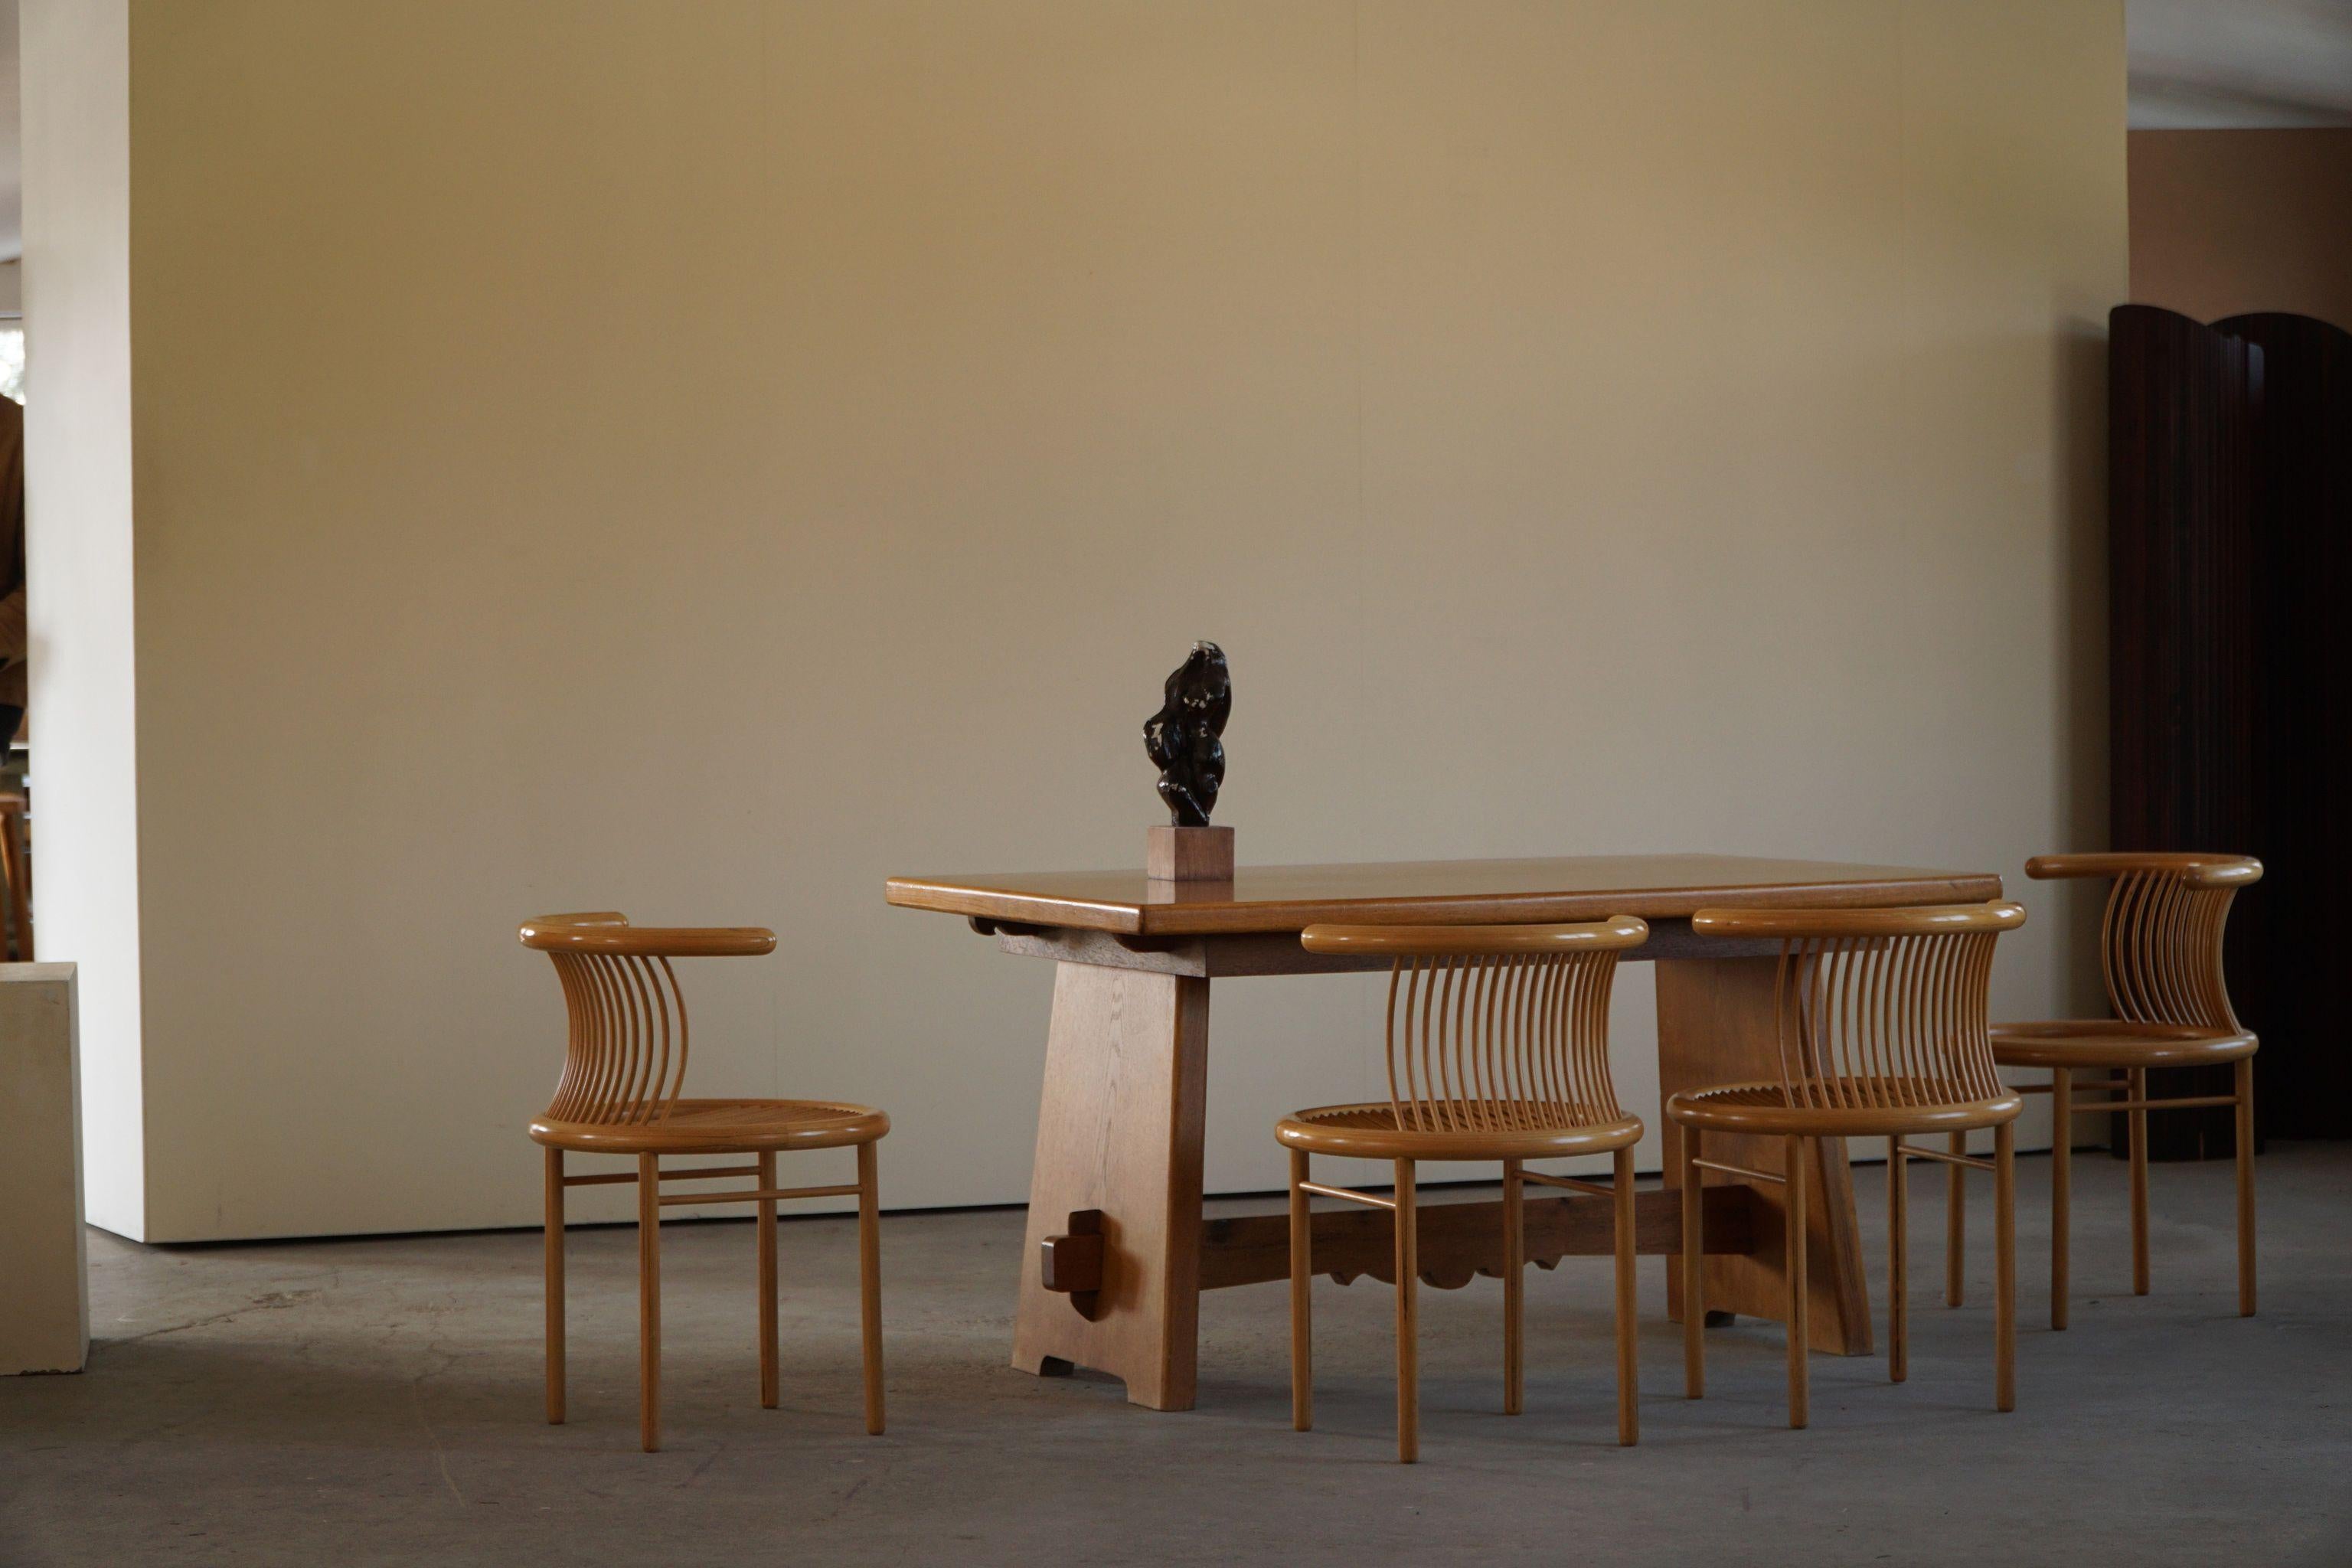 Monumentale table de salle à manger rectangulaire brutaliste en chêne, fabriquée par un ébéniste danois dans les années 1950. Des courbes sculpturales qui s'adaptent au style d'intérieur actuel. 
Peut également servir de grand bureau